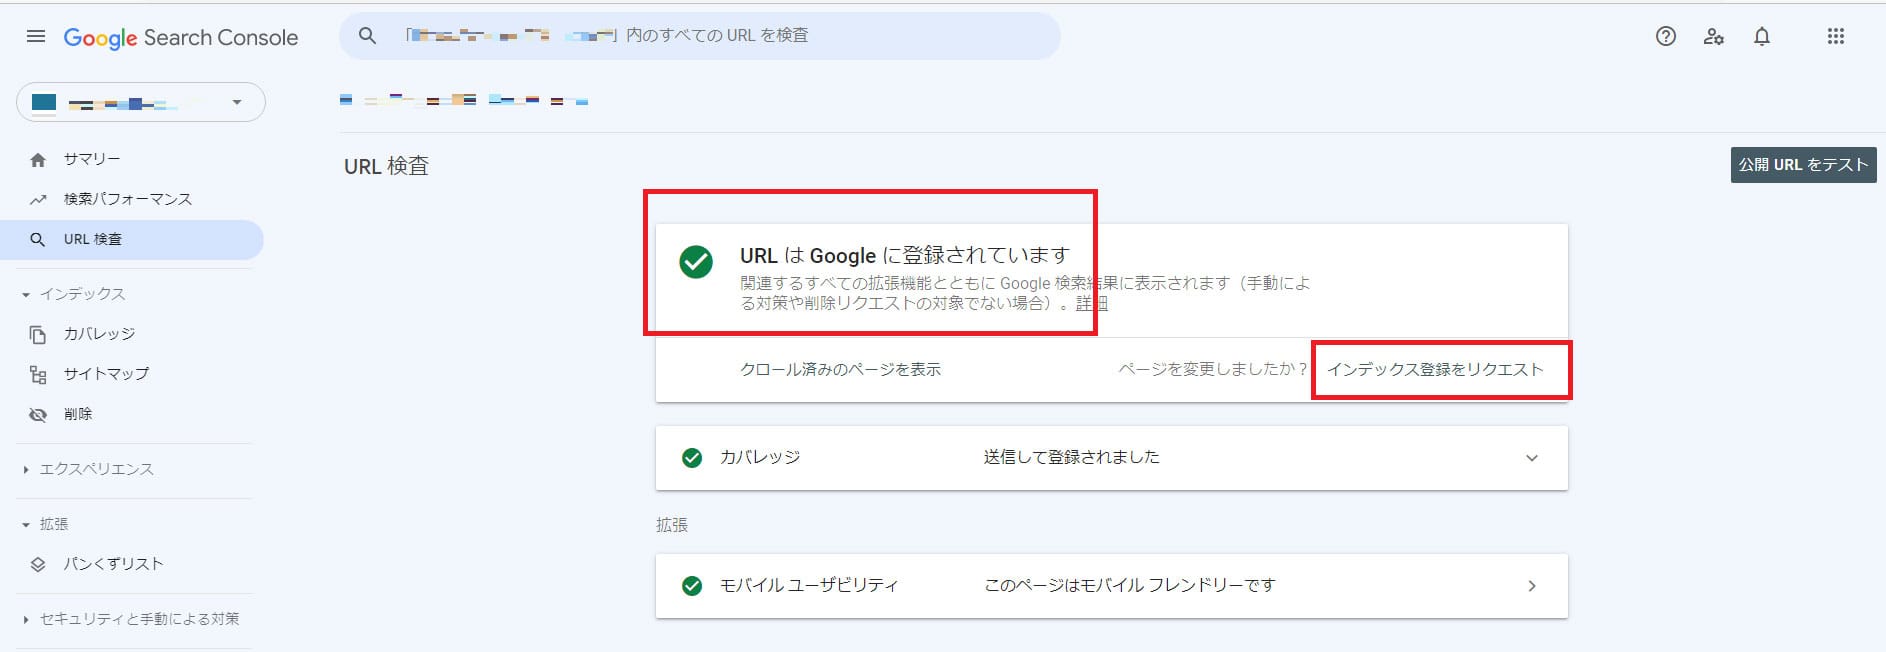 GoogleサーチコンソールでURLはGoogleに登録されていますと表示された例